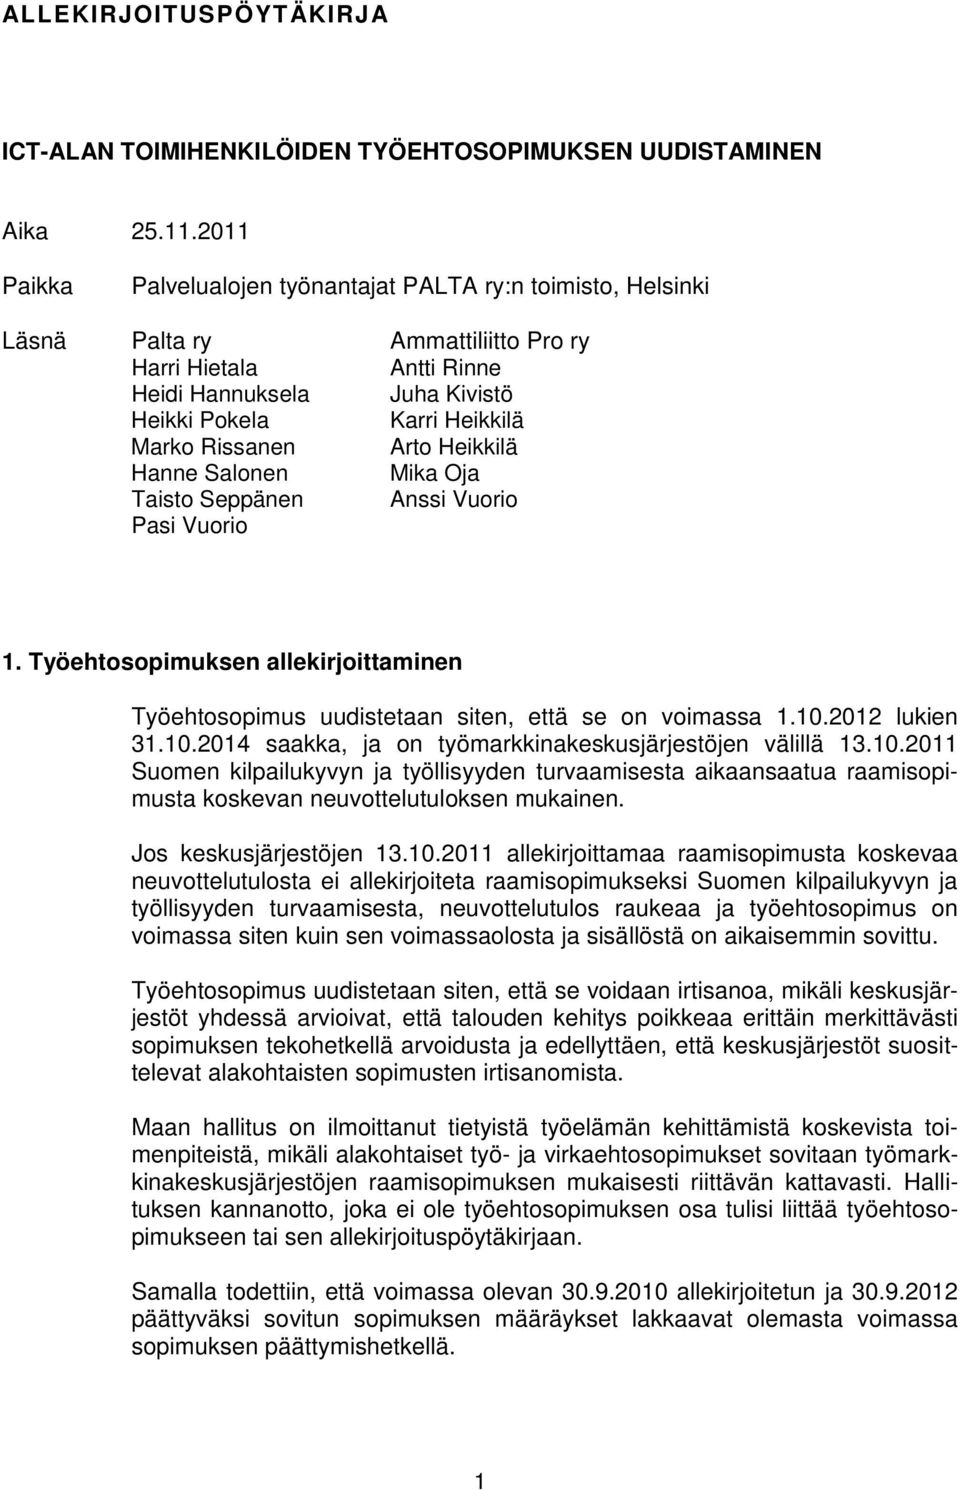 Rissanen Arto Heikkilä Hanne Salonen Mika Oja Taisto Seppänen Anssi Vuorio Pasi Vuorio 1. Työehtosopimuksen allekirjoittaminen Työehtosopimus uudistetaan siten, että se on voimassa 1.10.